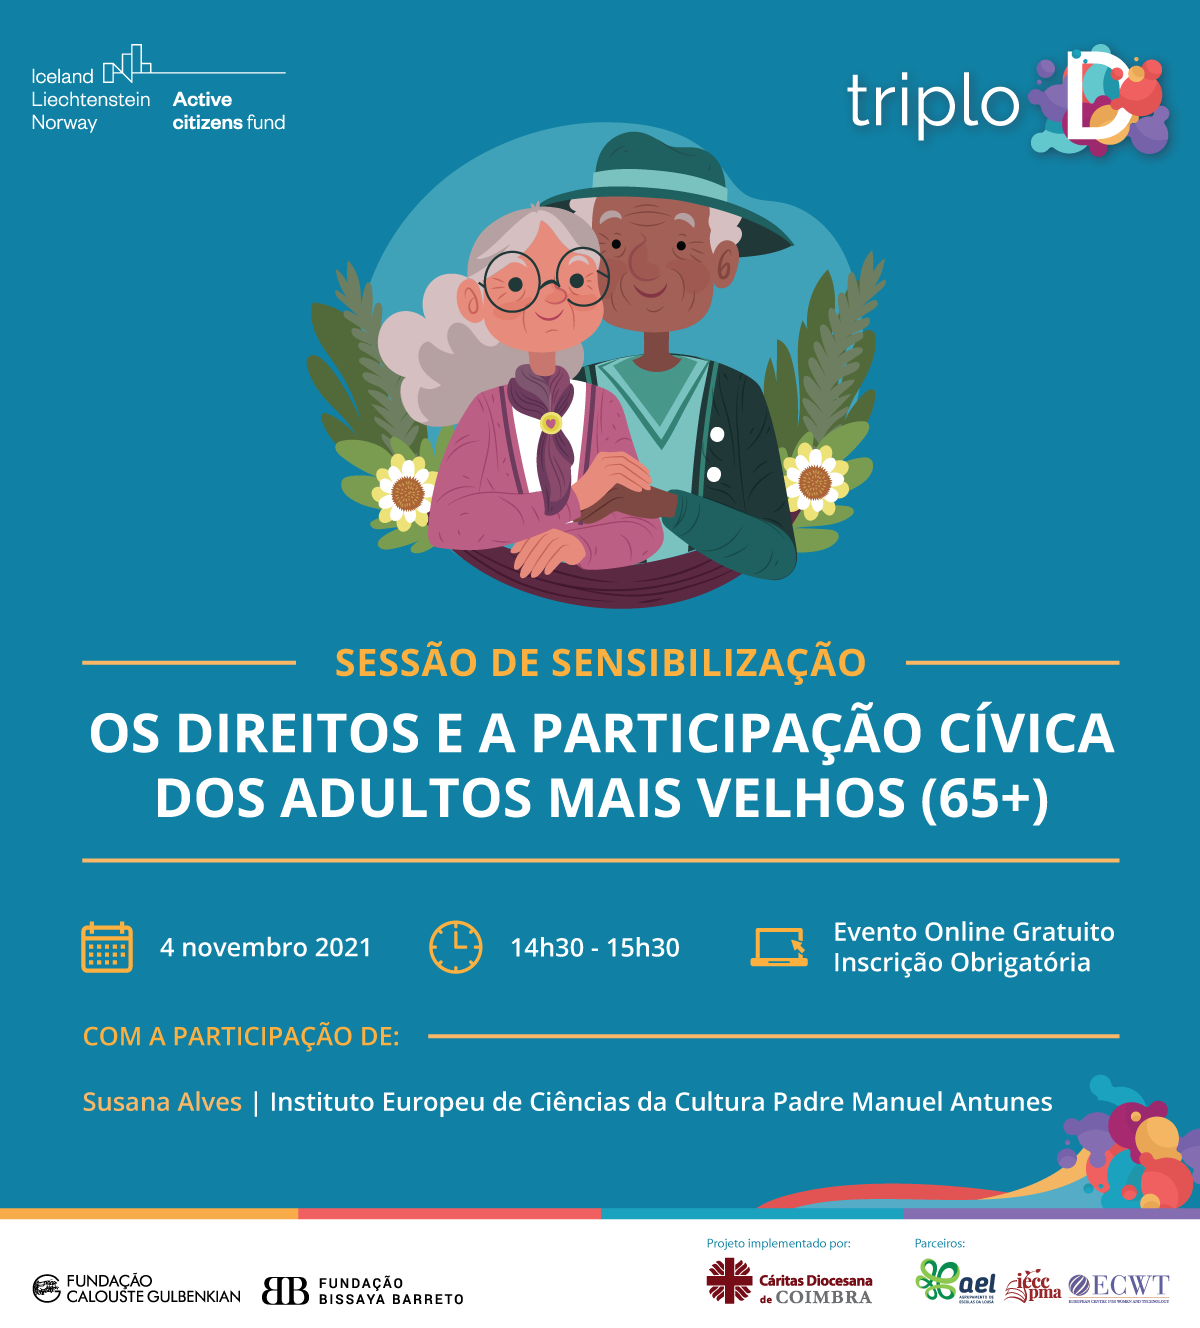 Triplo D Sessão De Sensibilização Online Caritas Diocesana De Coimbra 0056